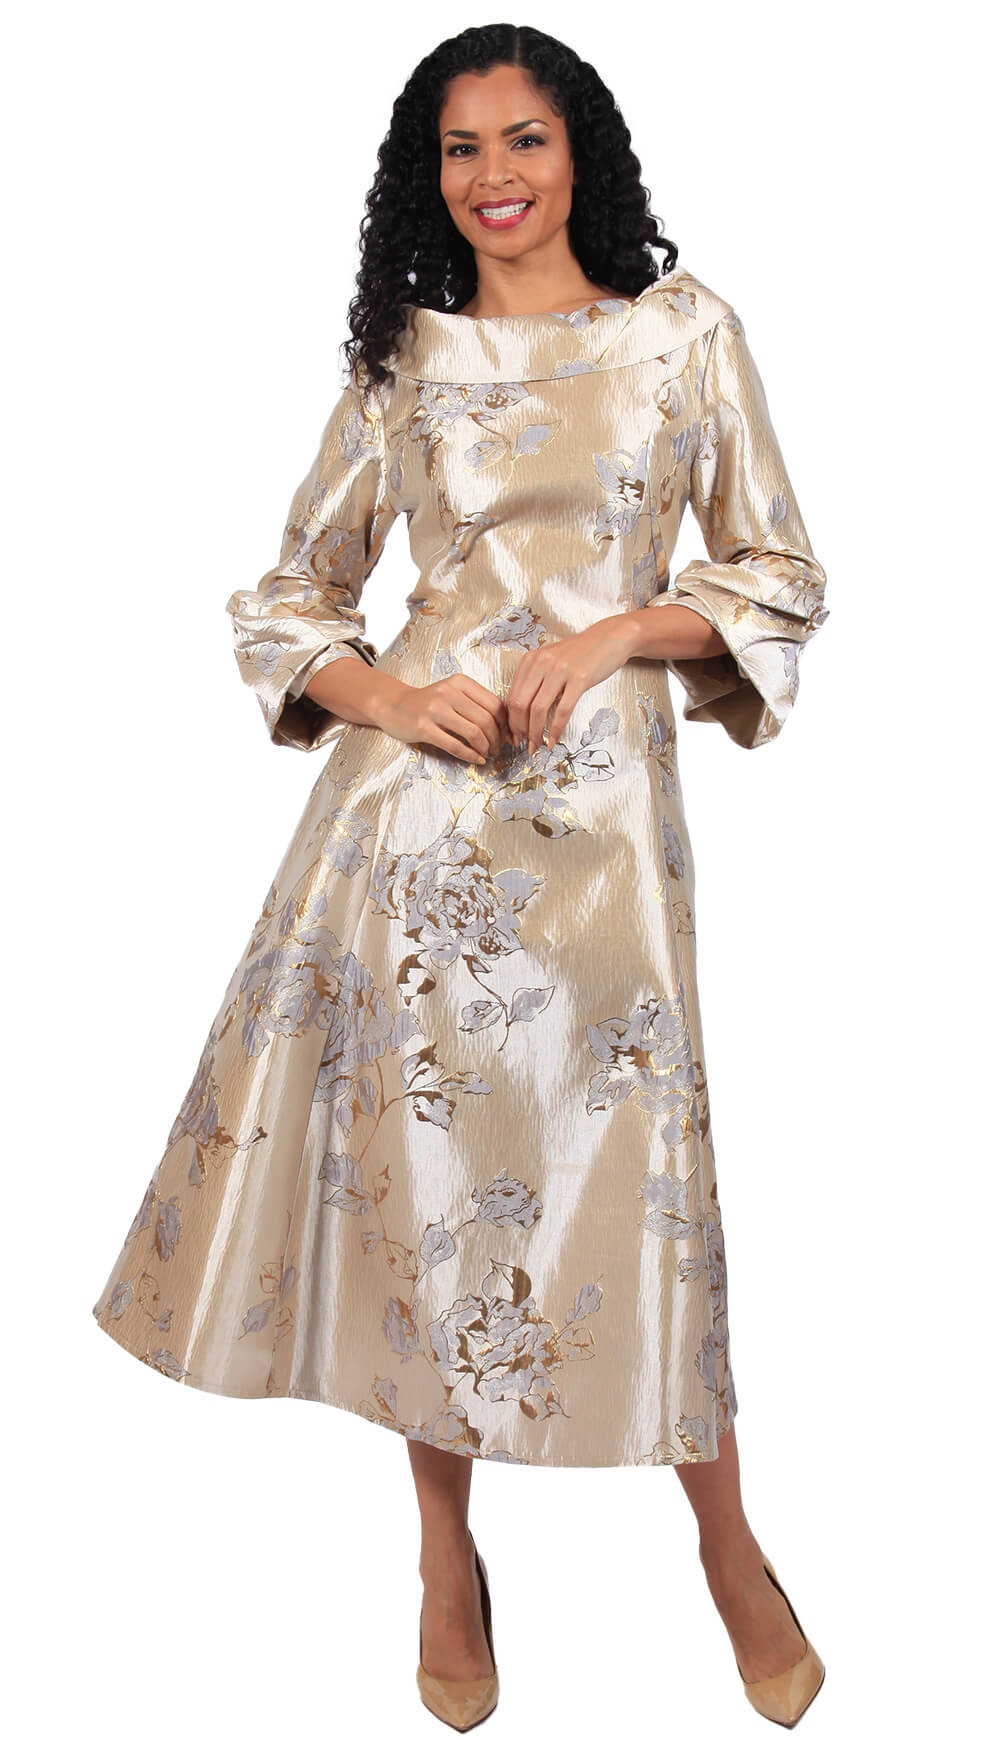 Diana 1 Piece Brocade Dress 8700-CH Size 8-24